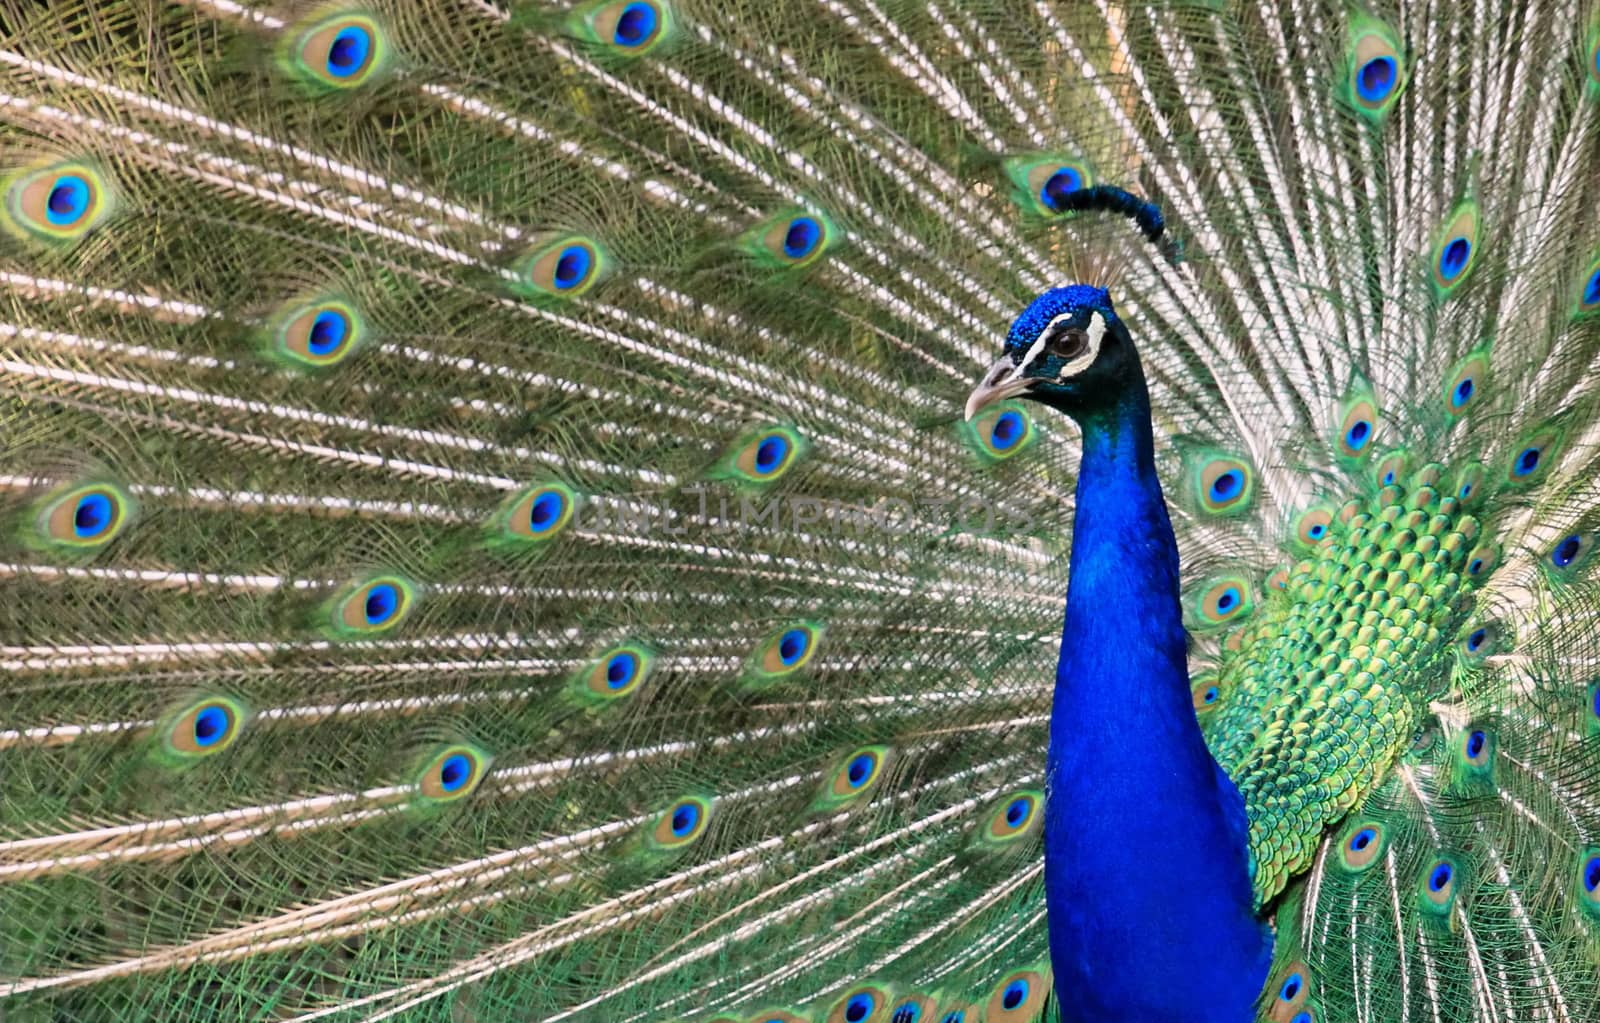 Peacock by Elenaphotos21